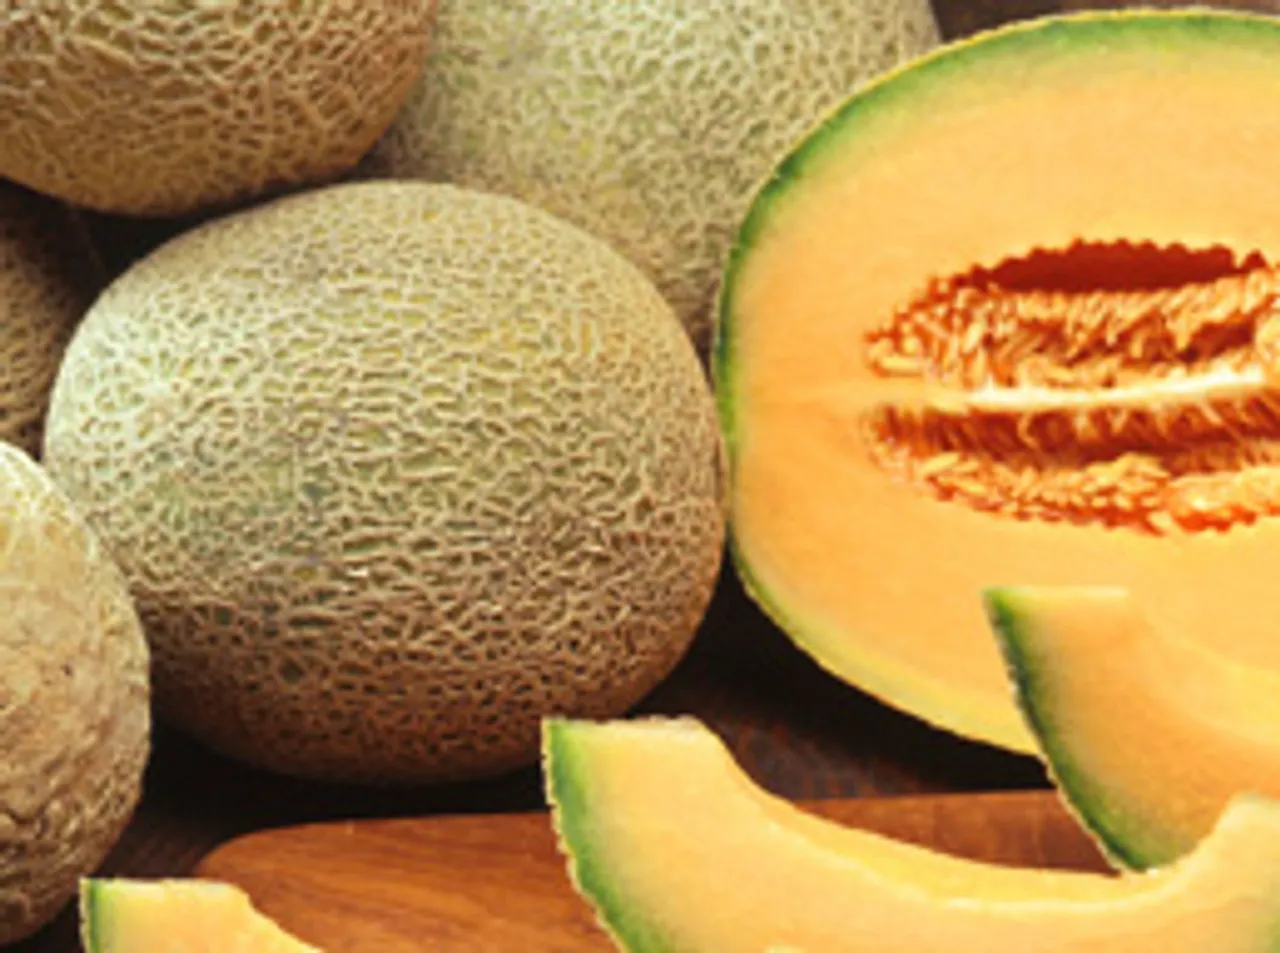 Melon for good health